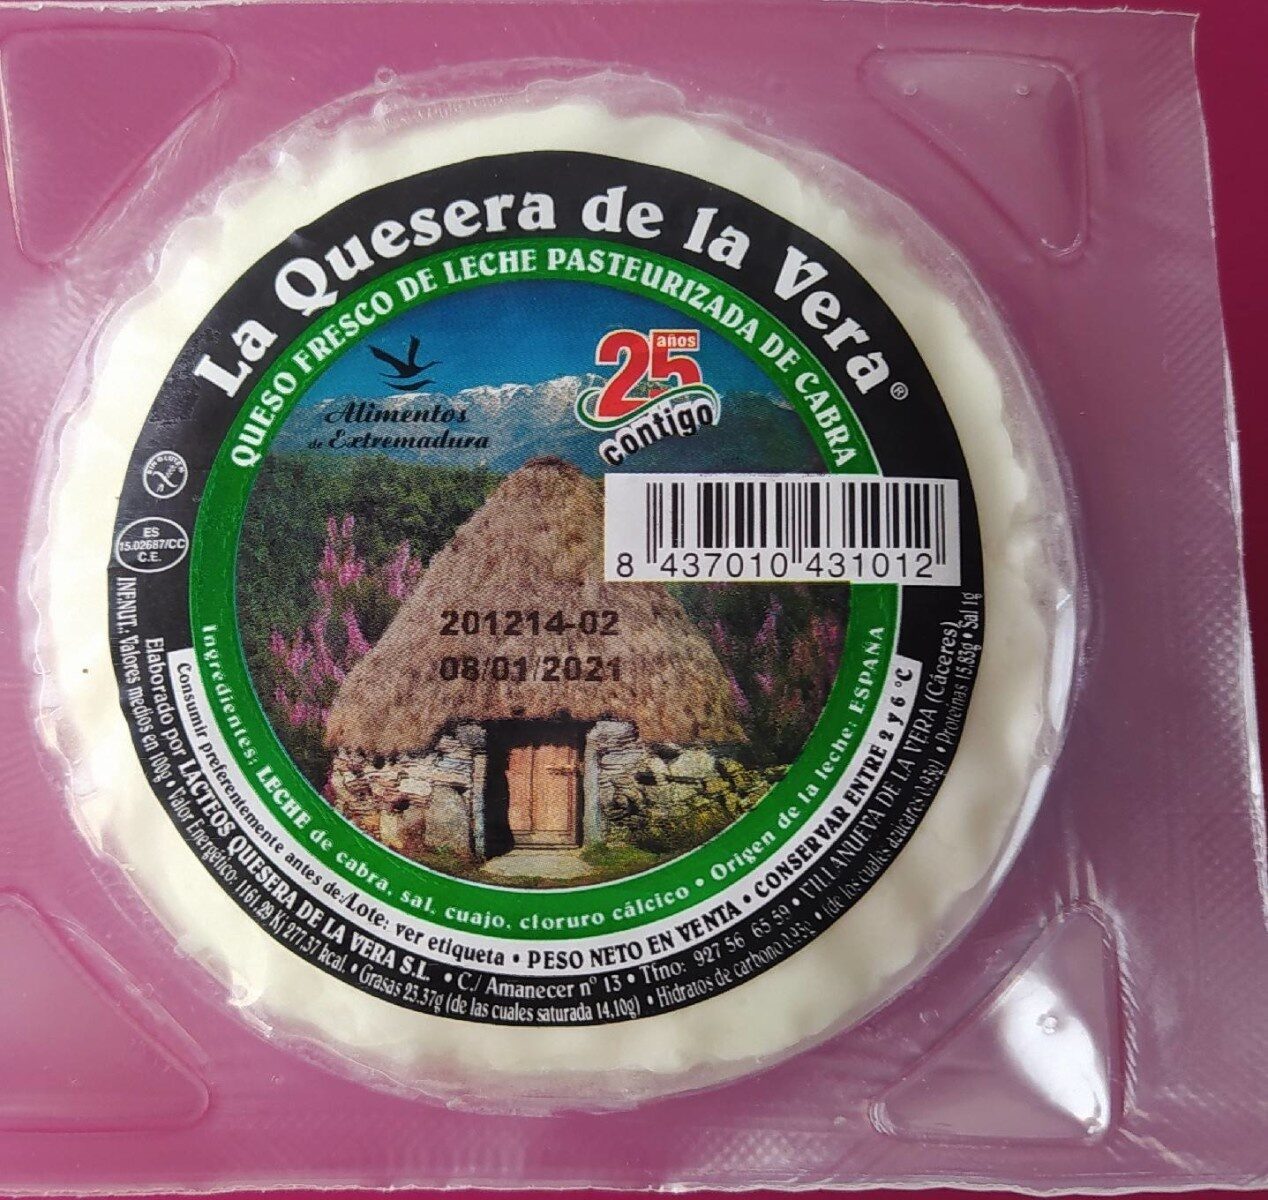 La quesera de la Vera - Producte - es